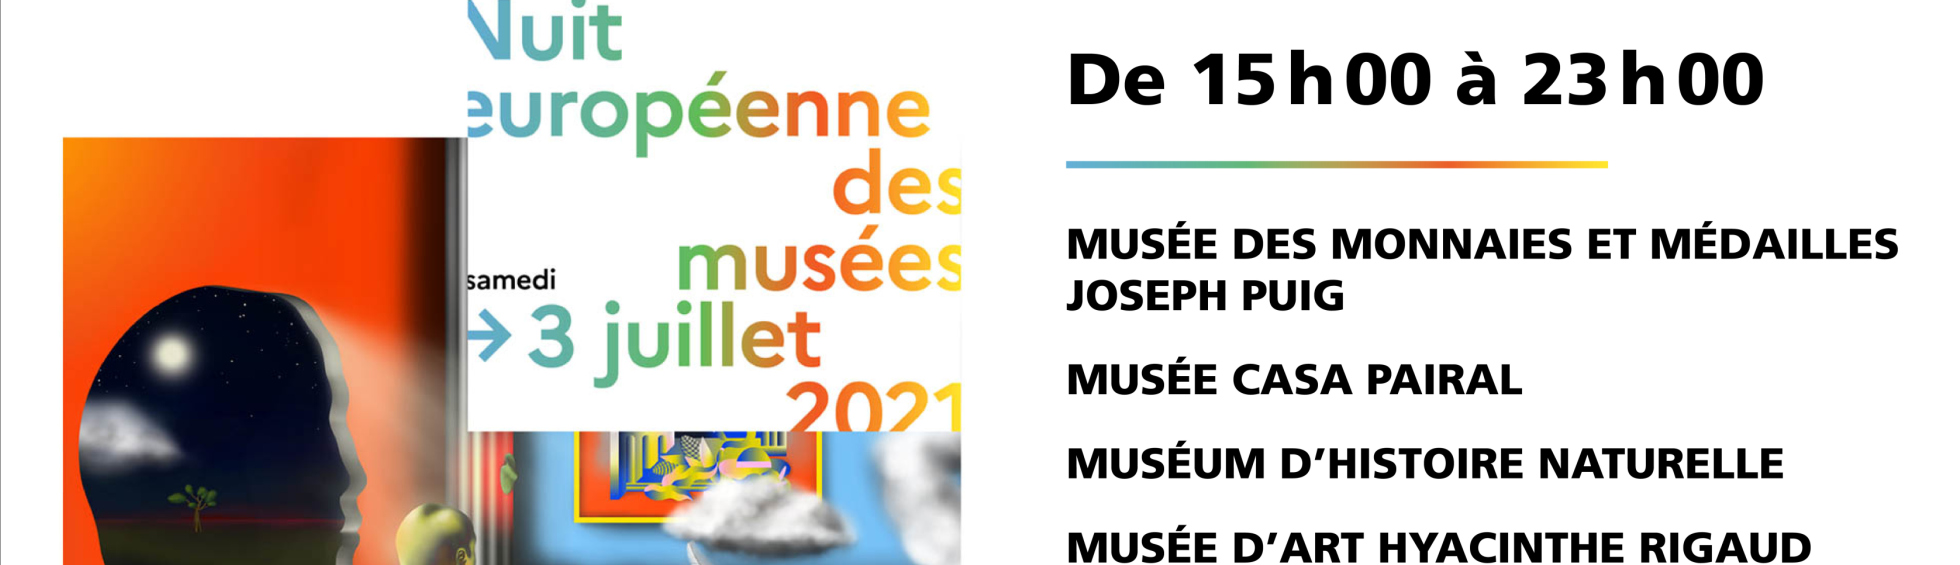 Nuit européenne des musées - samedi 3 juillet 2021